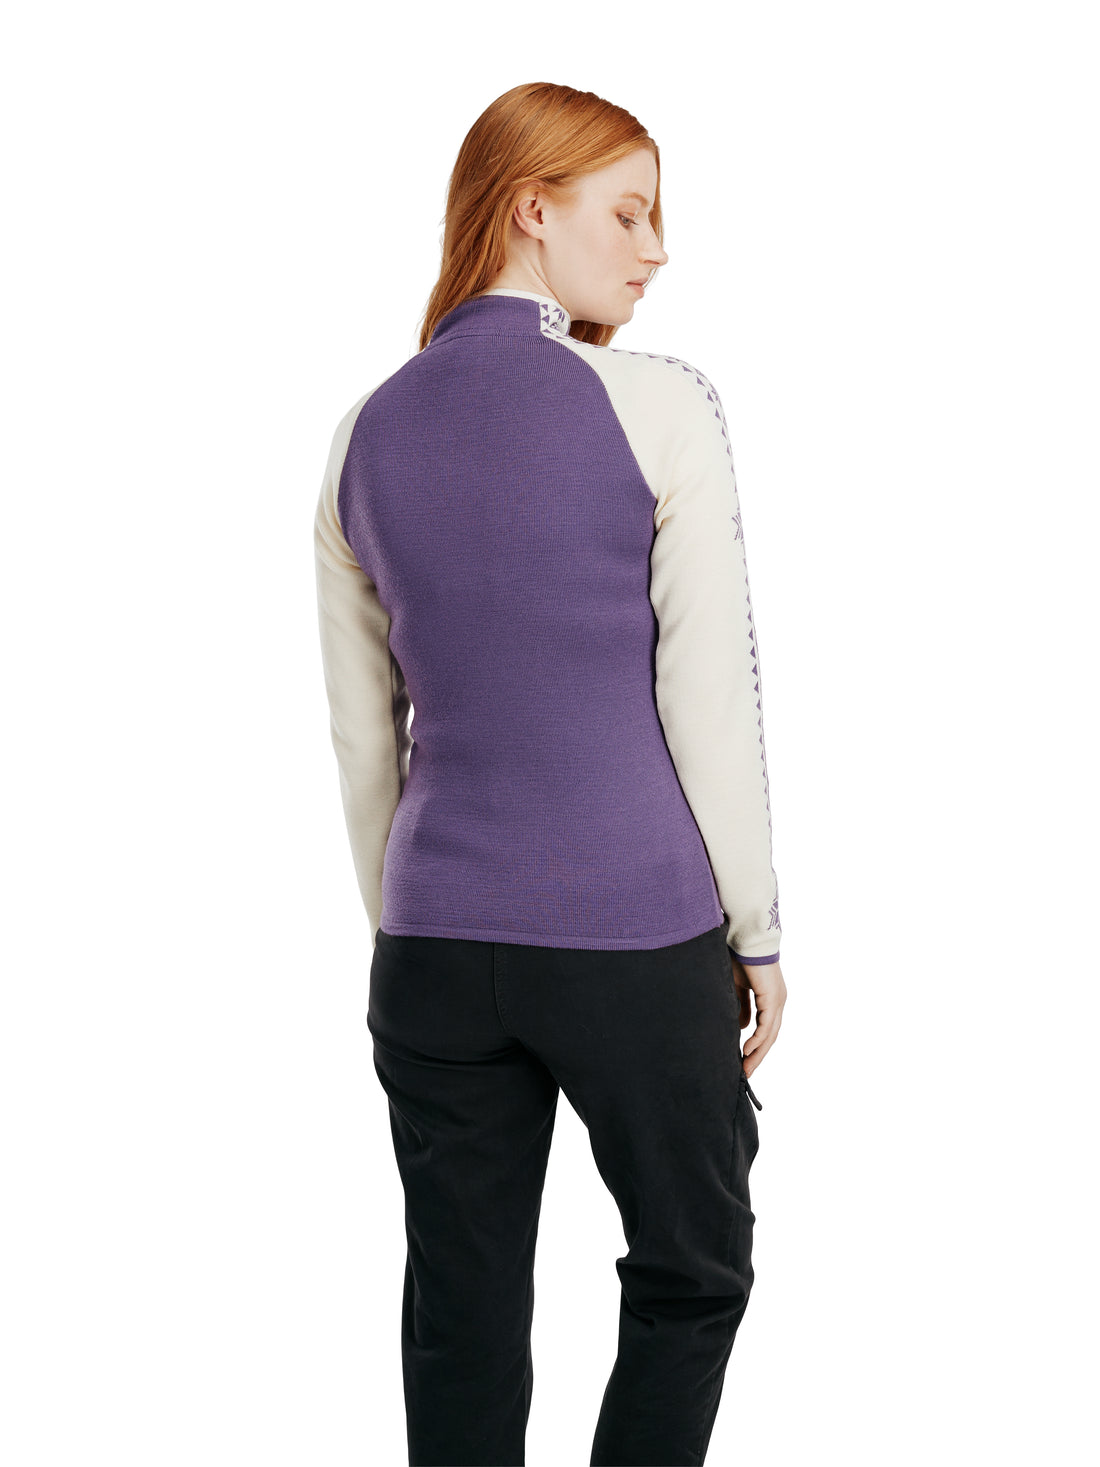 Dale of Norway- Geilo Women's Sweater - Purple